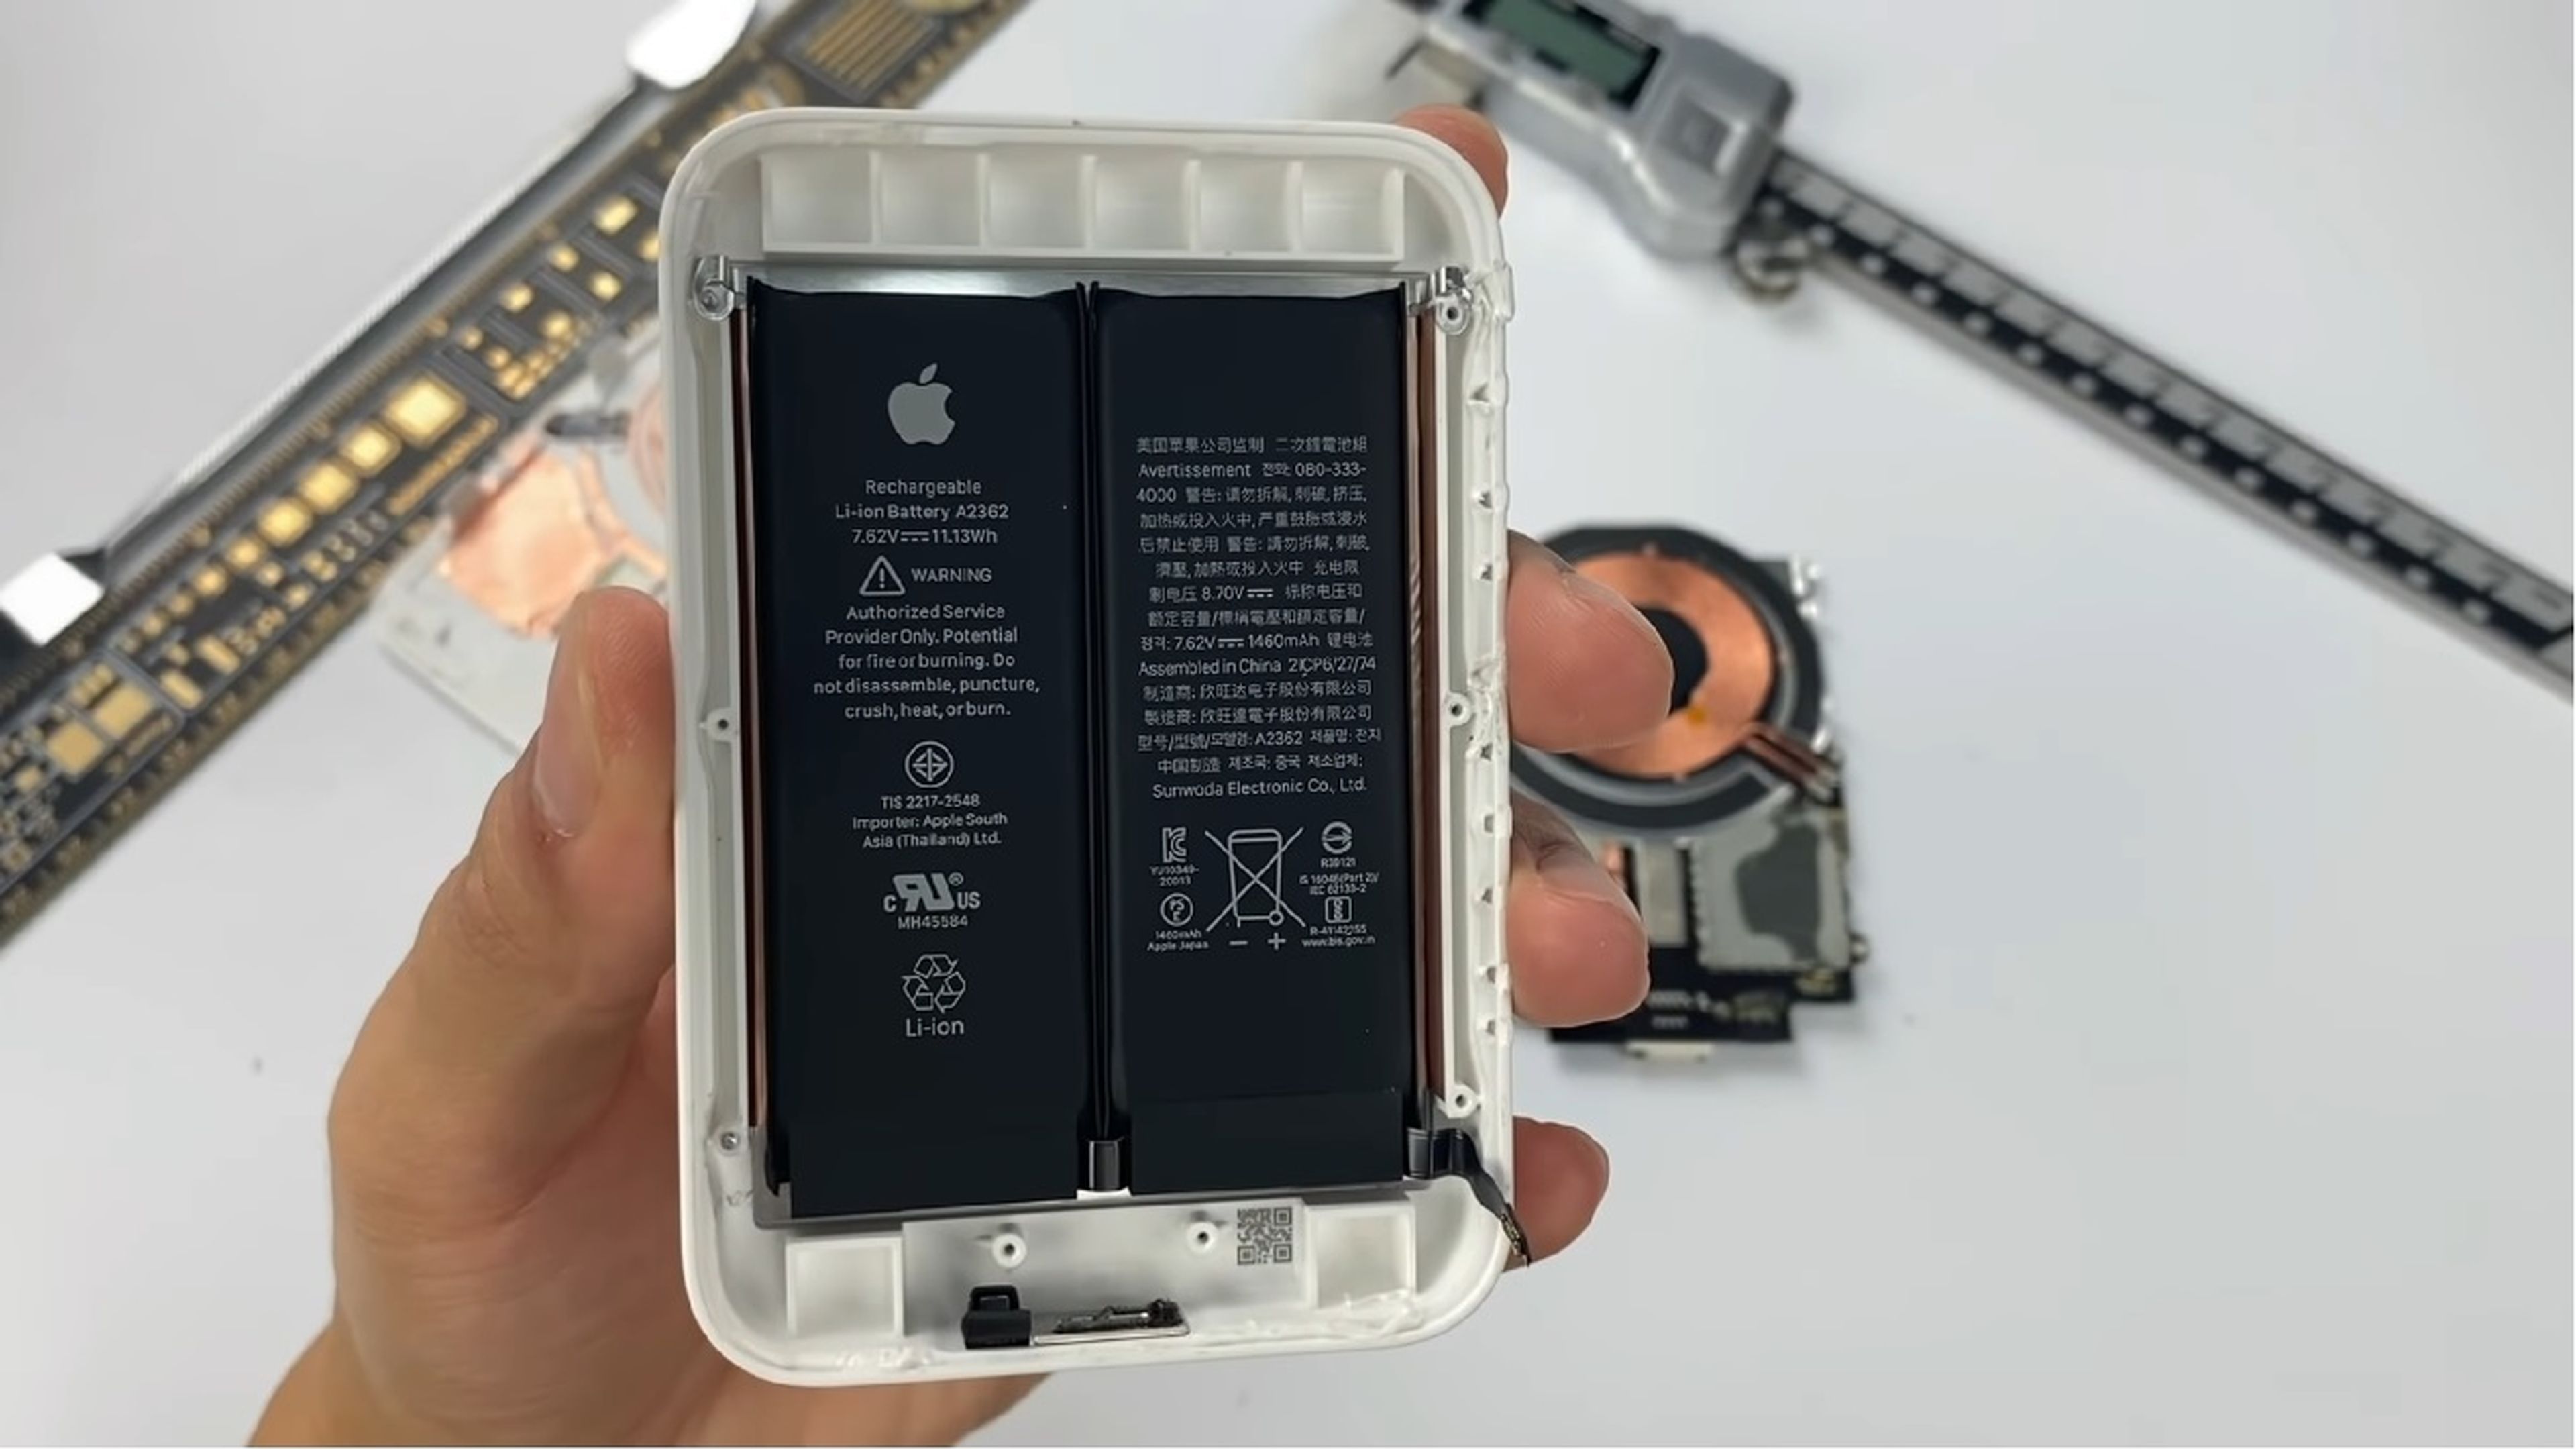 Así es la MagSafe Battery Pack por dentro y por qué no puede conseguir una  carga completa de iPhone